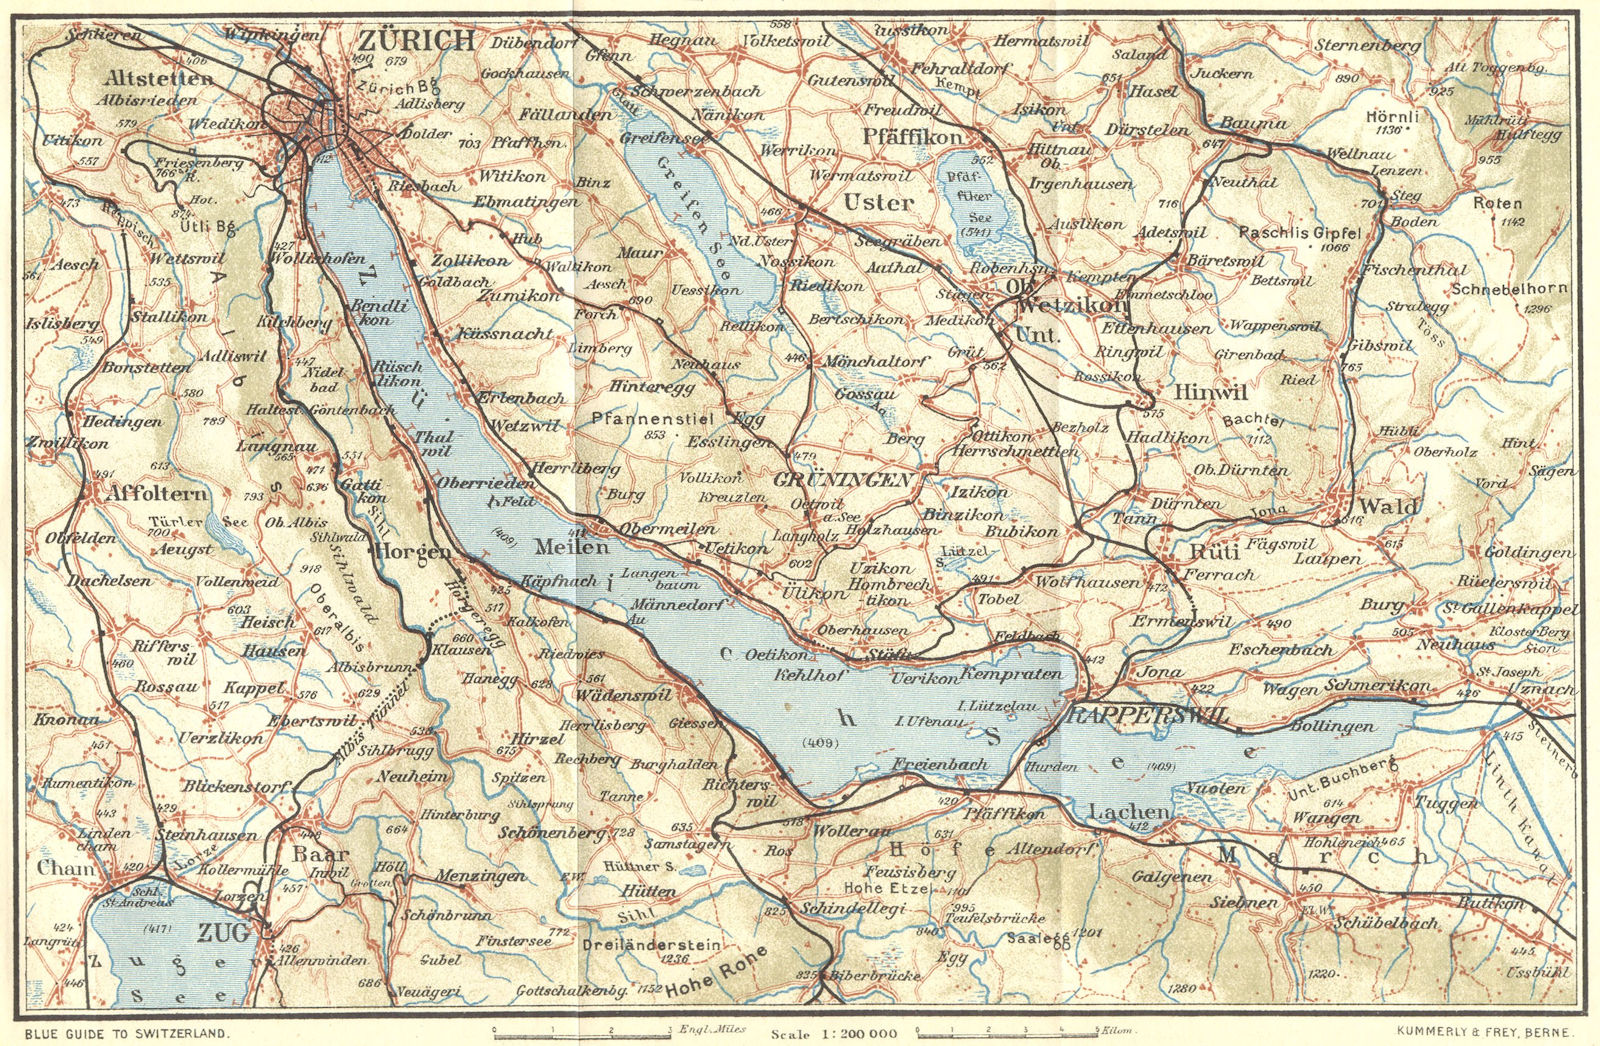 SWITZERLAND. Lake of Zurich 1923 old antique vintage map plan chart